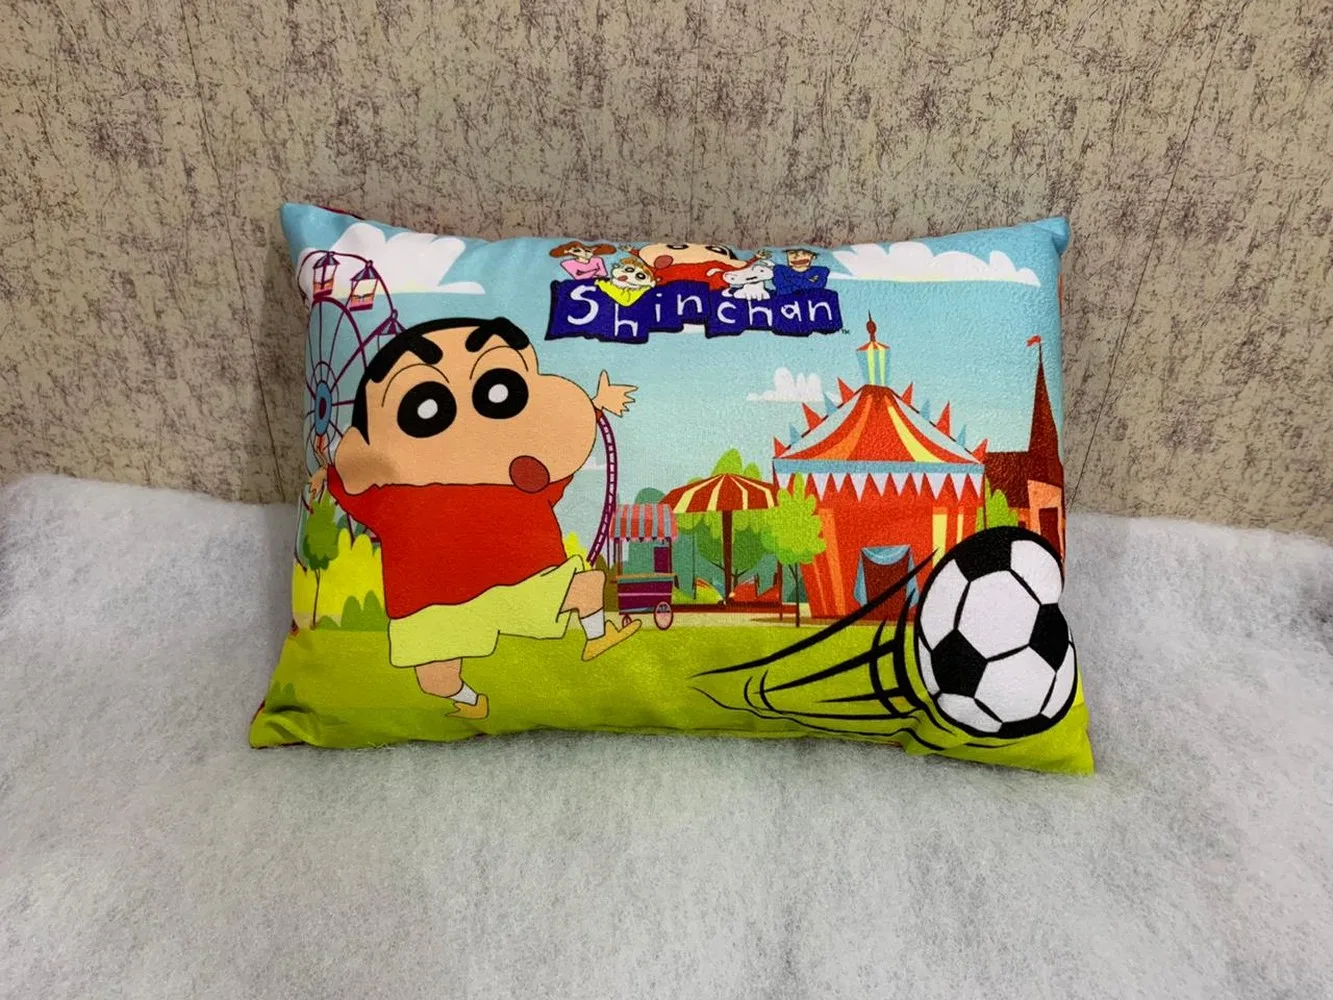 Kids Cartoon Pillow Shinchan, 11x17, 1 Piece, Colorful